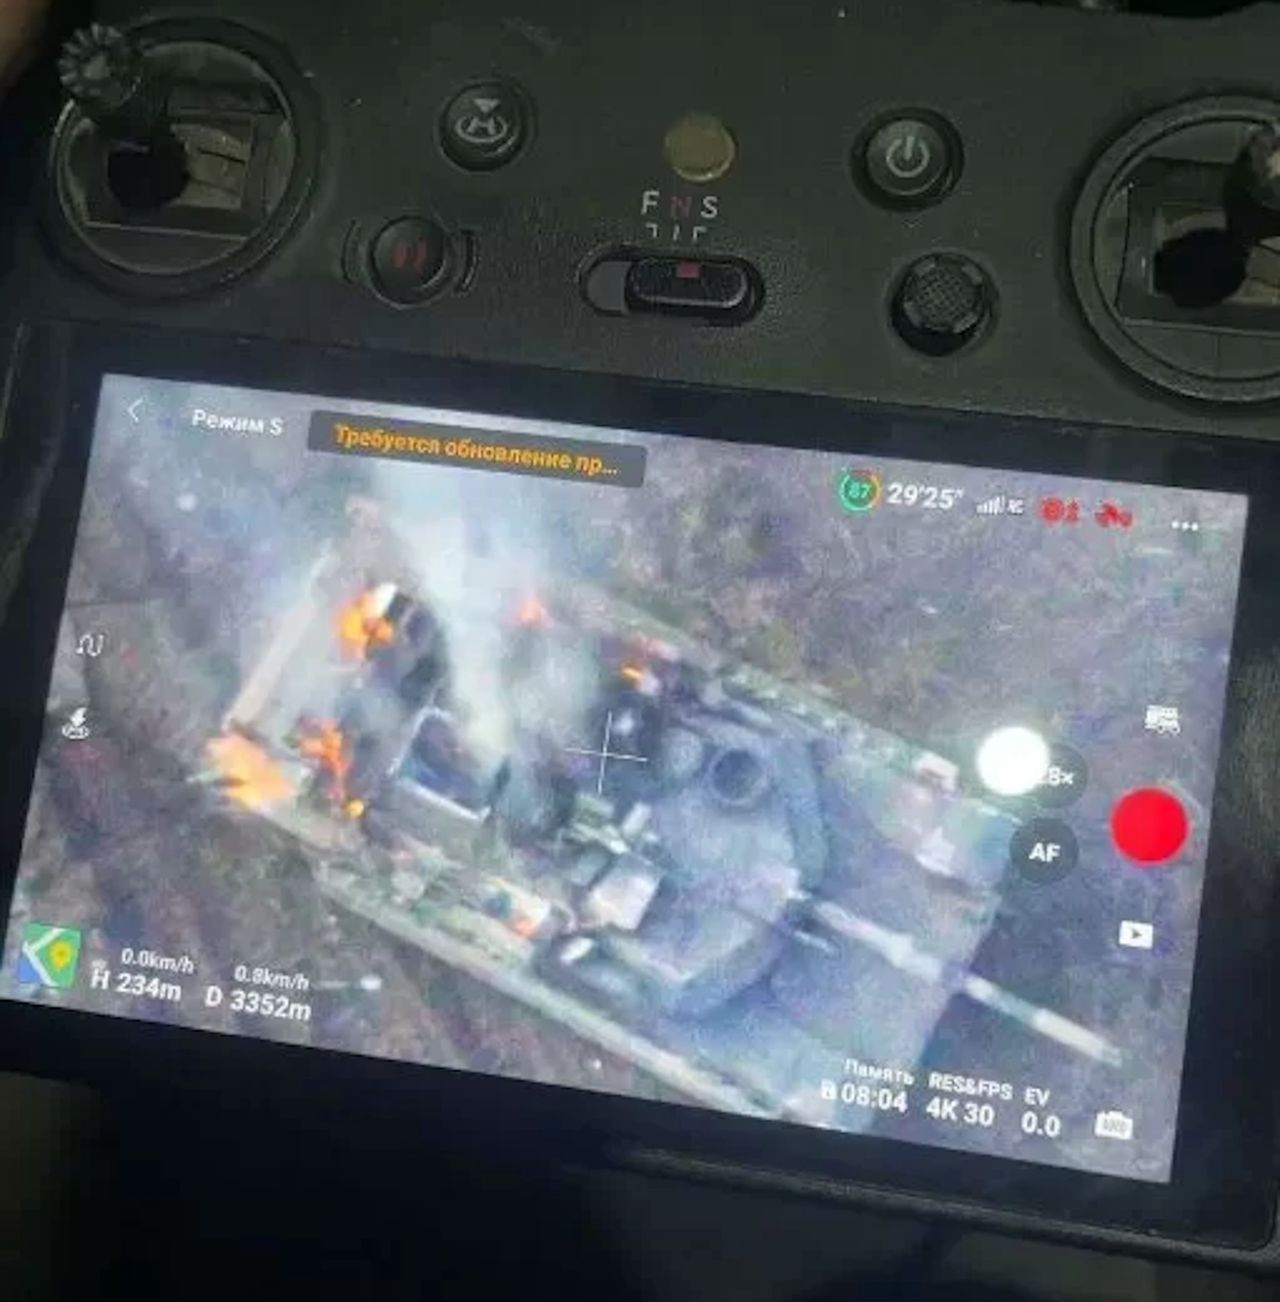 Pierwszy Abrams trafiony w Ukrainie. Wybuchł magazyn amunicji